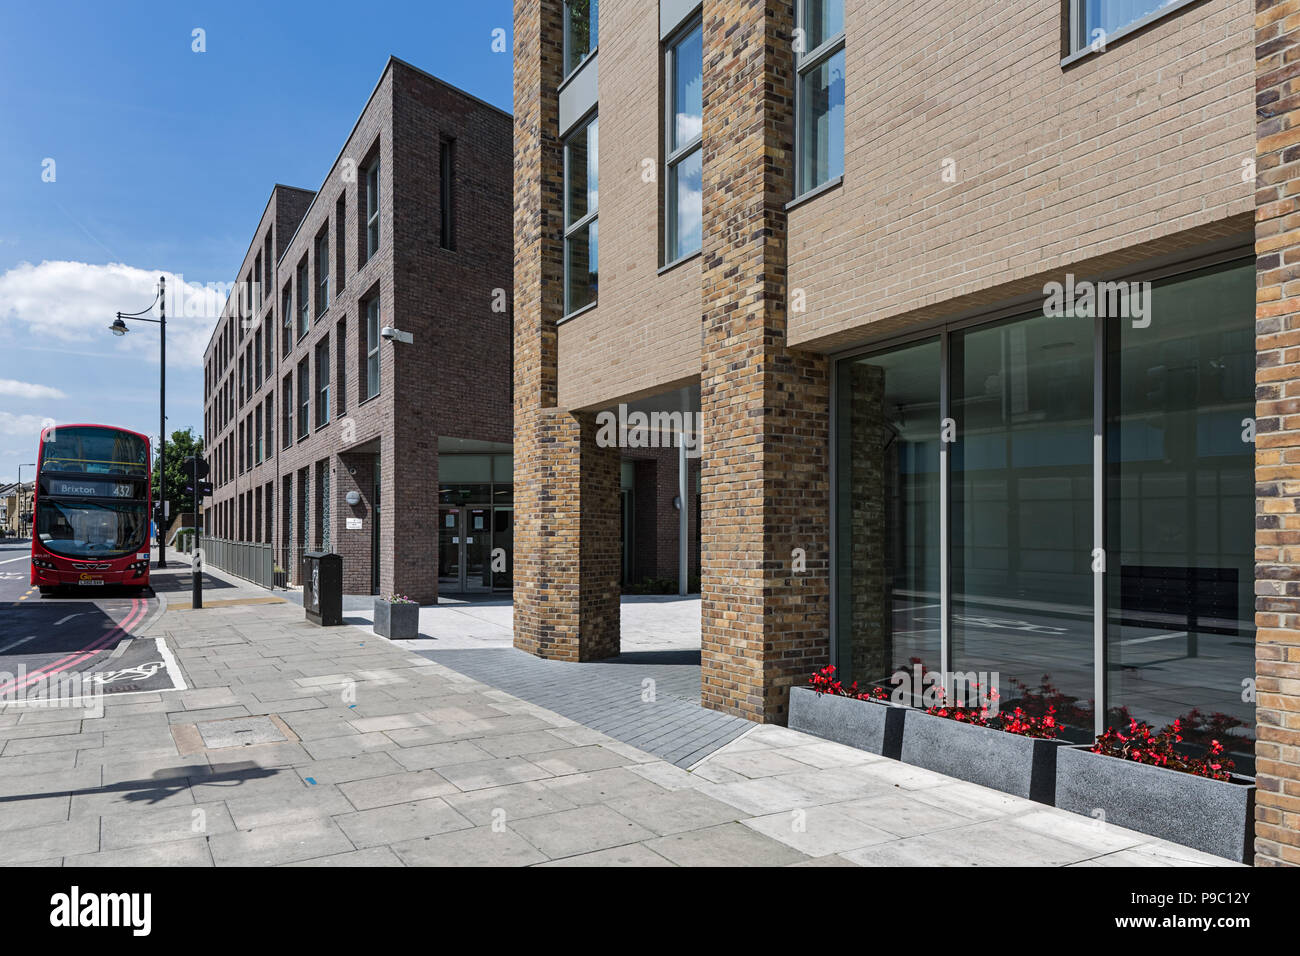 La Junction, Brixton - un proyecto de regeneración urbana Foto de stock